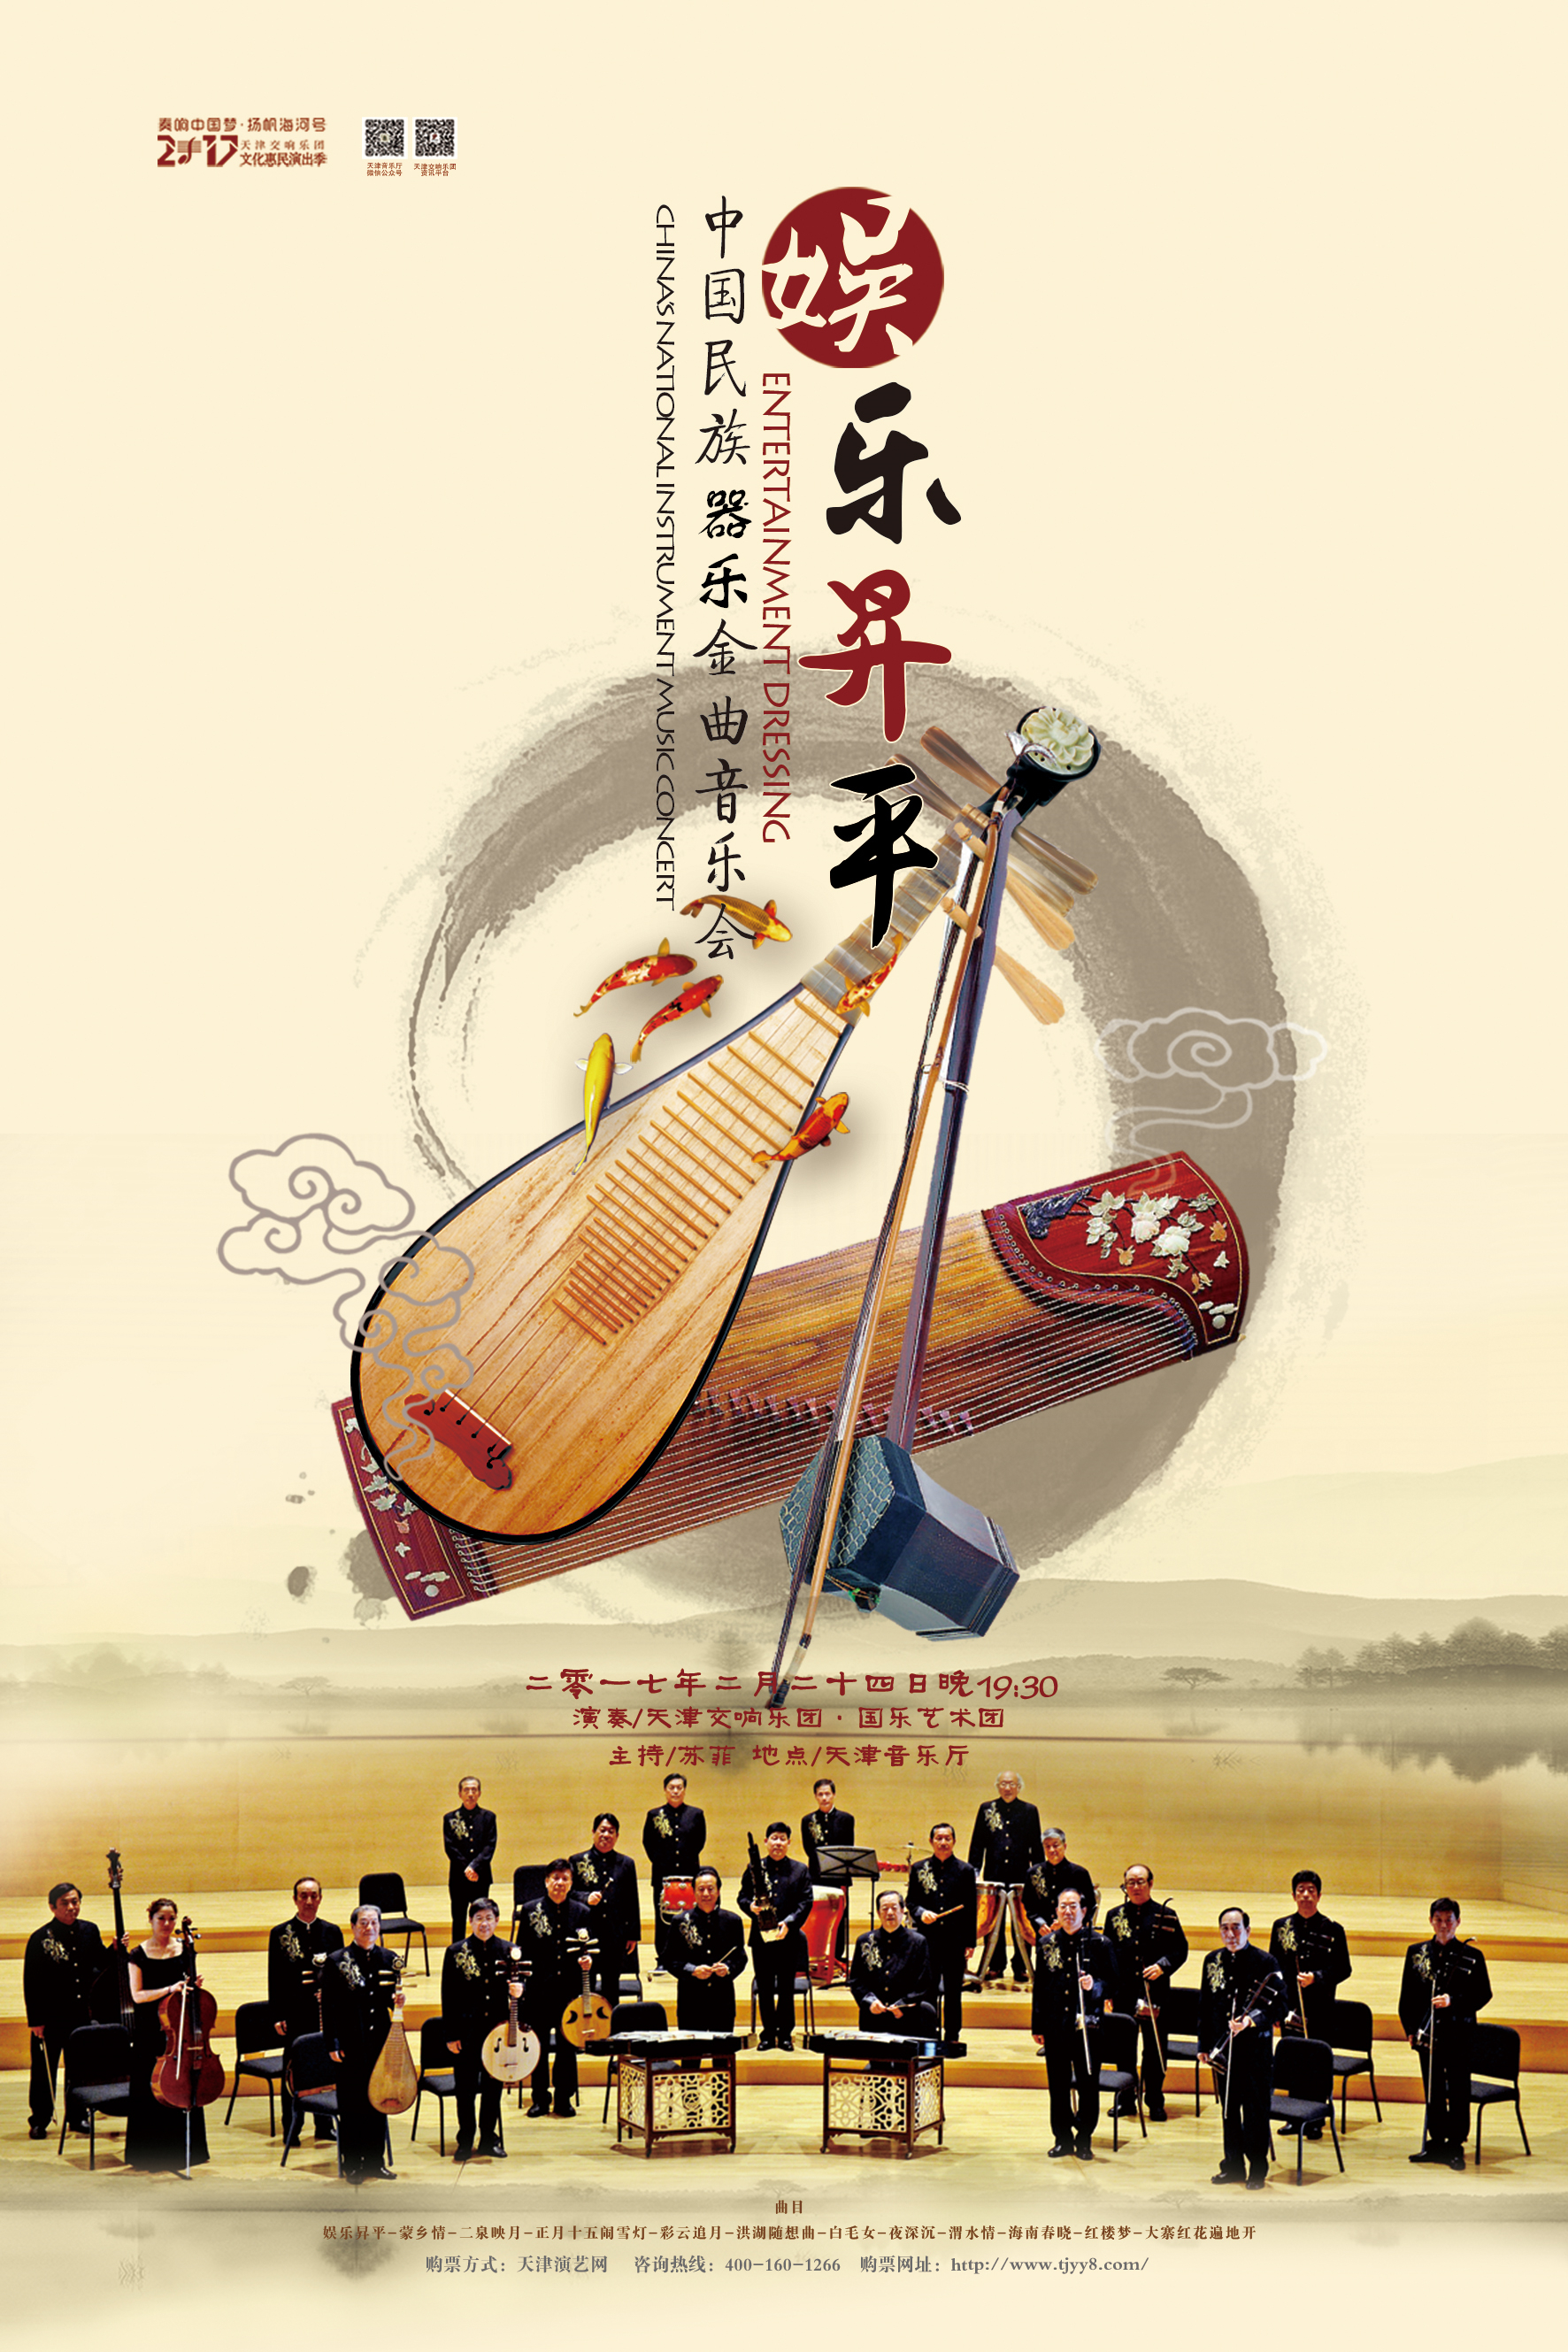 娱乐昇平—中国民族器乐金曲音乐会